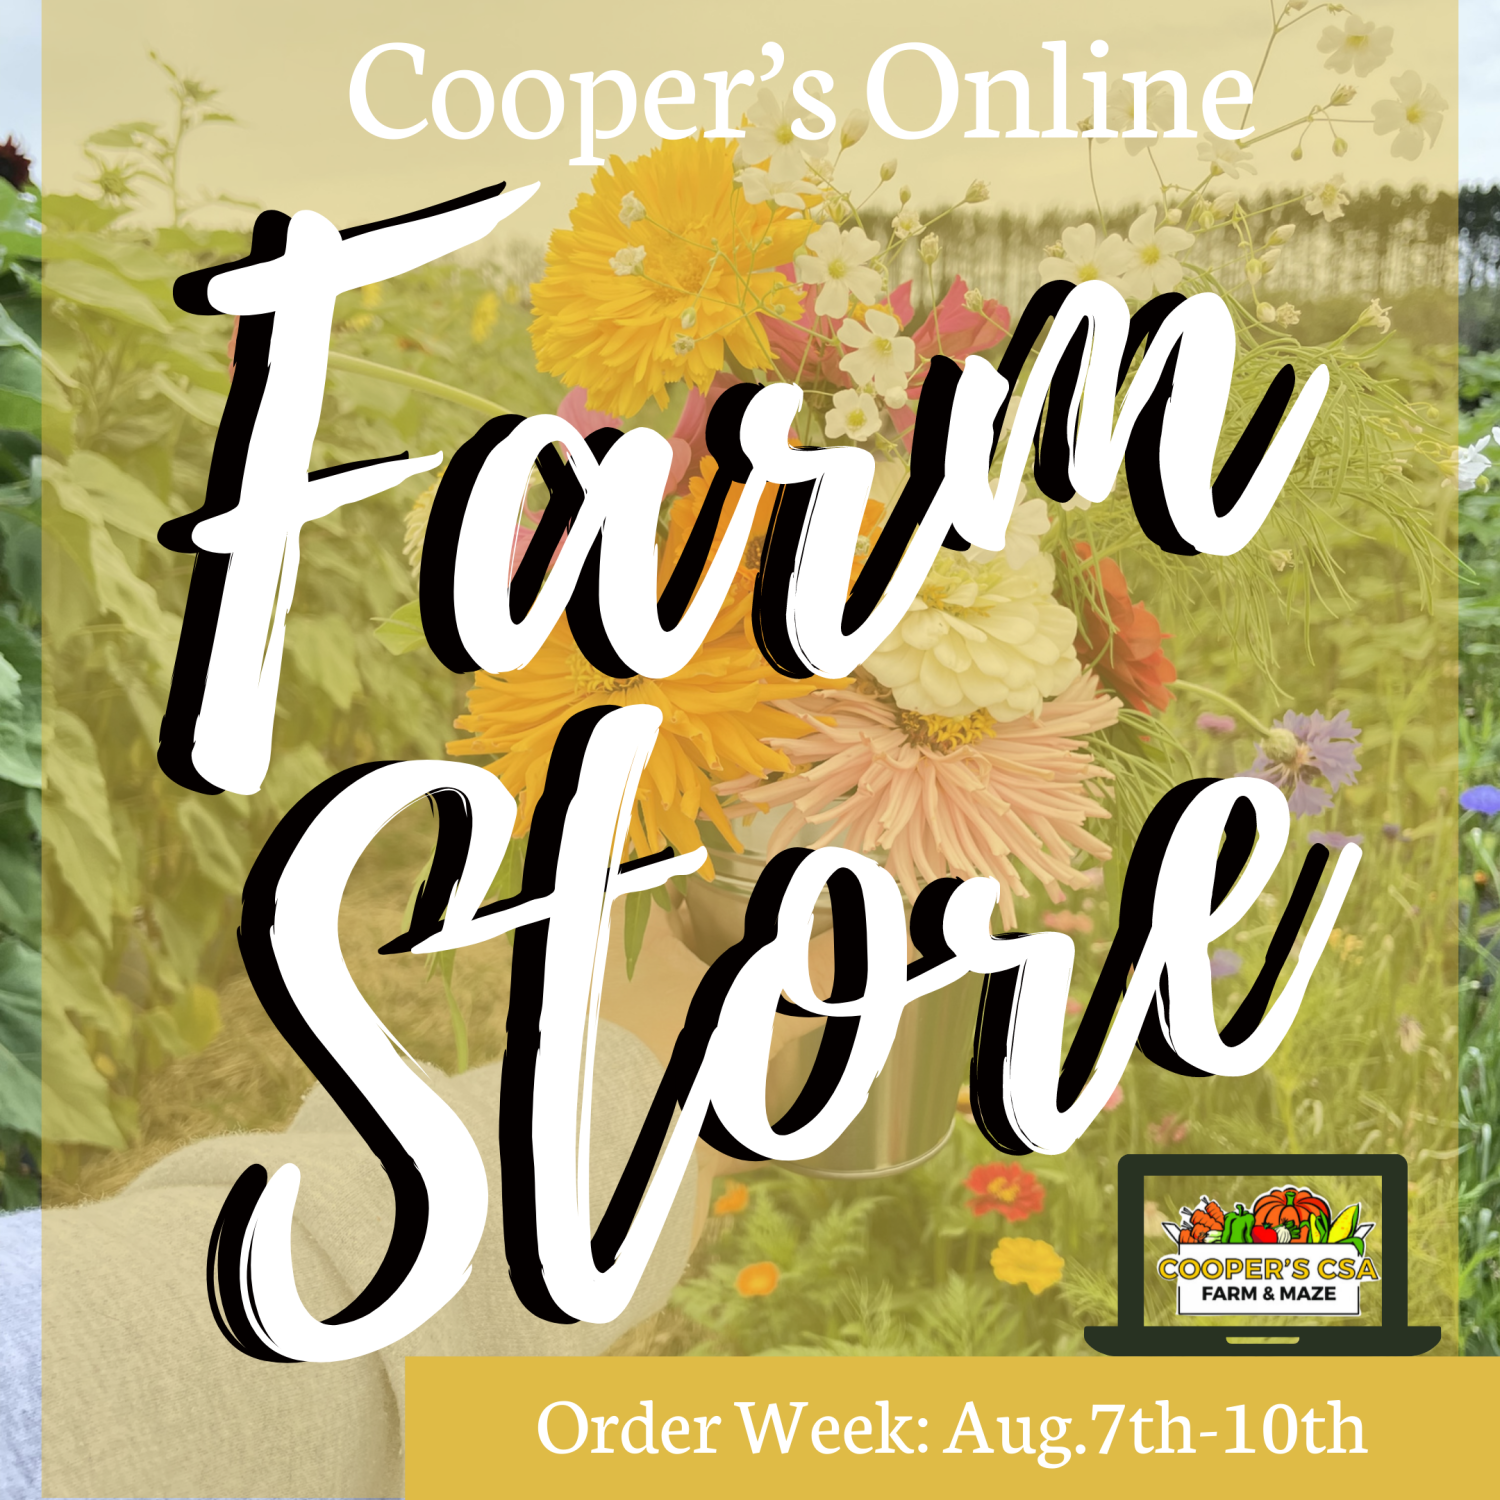 Previous Happening: Coopers CSA Online FarmStore- Order Week 10